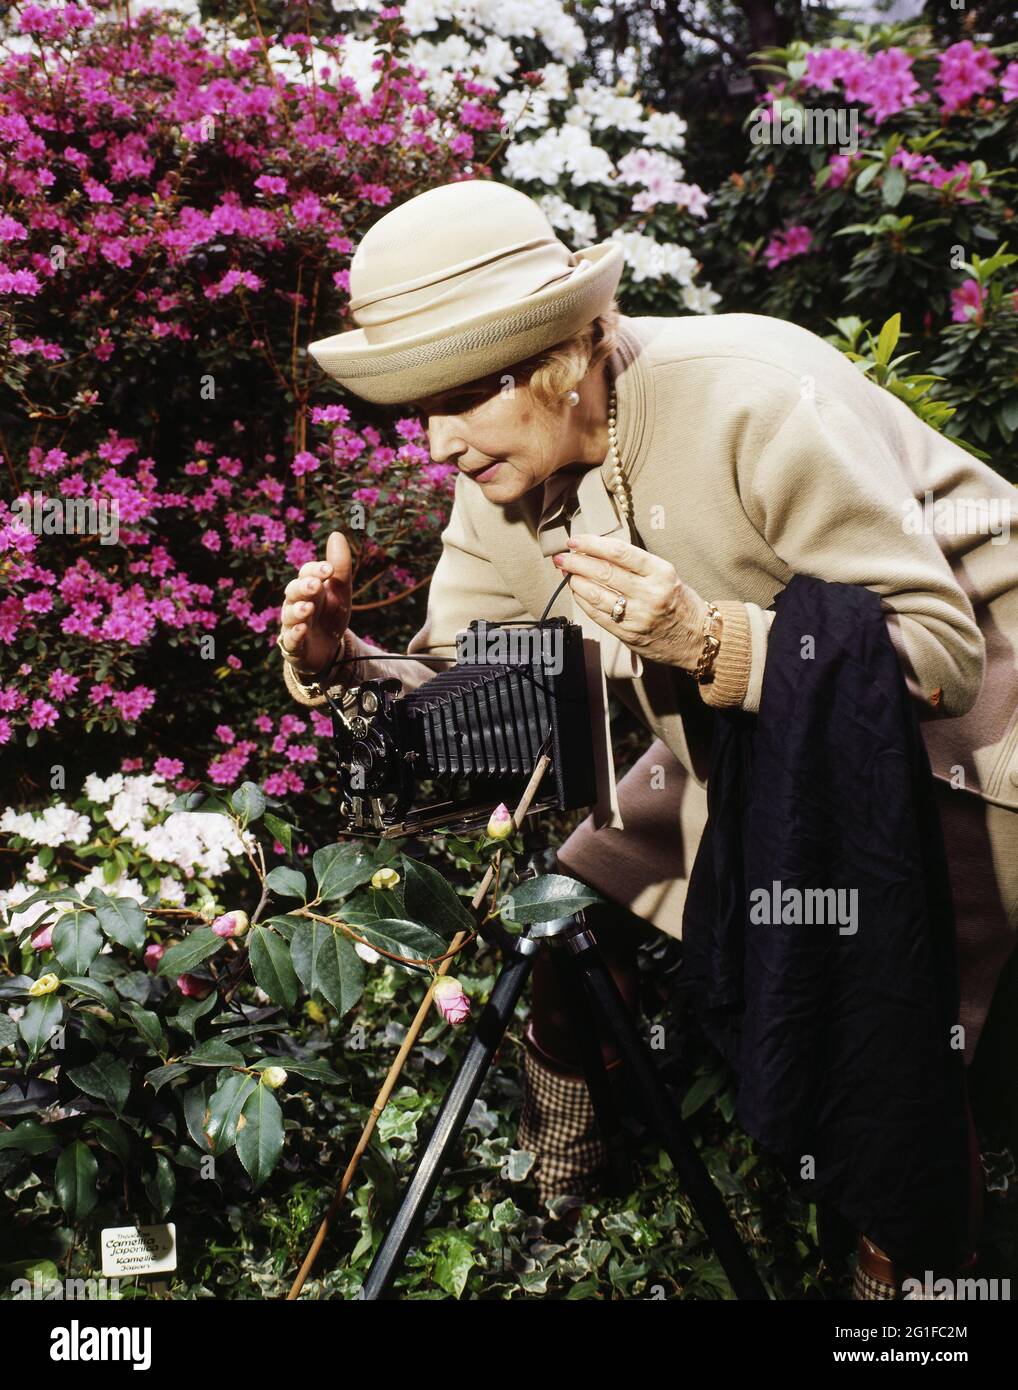 Persone, donne, anni '60, anziana signora con fotocamera che scatta una foto di fiori, DIRITTI AGGIUNTIVI-CLEARANCE-INFO-NON-DISPONIBILE Foto Stock